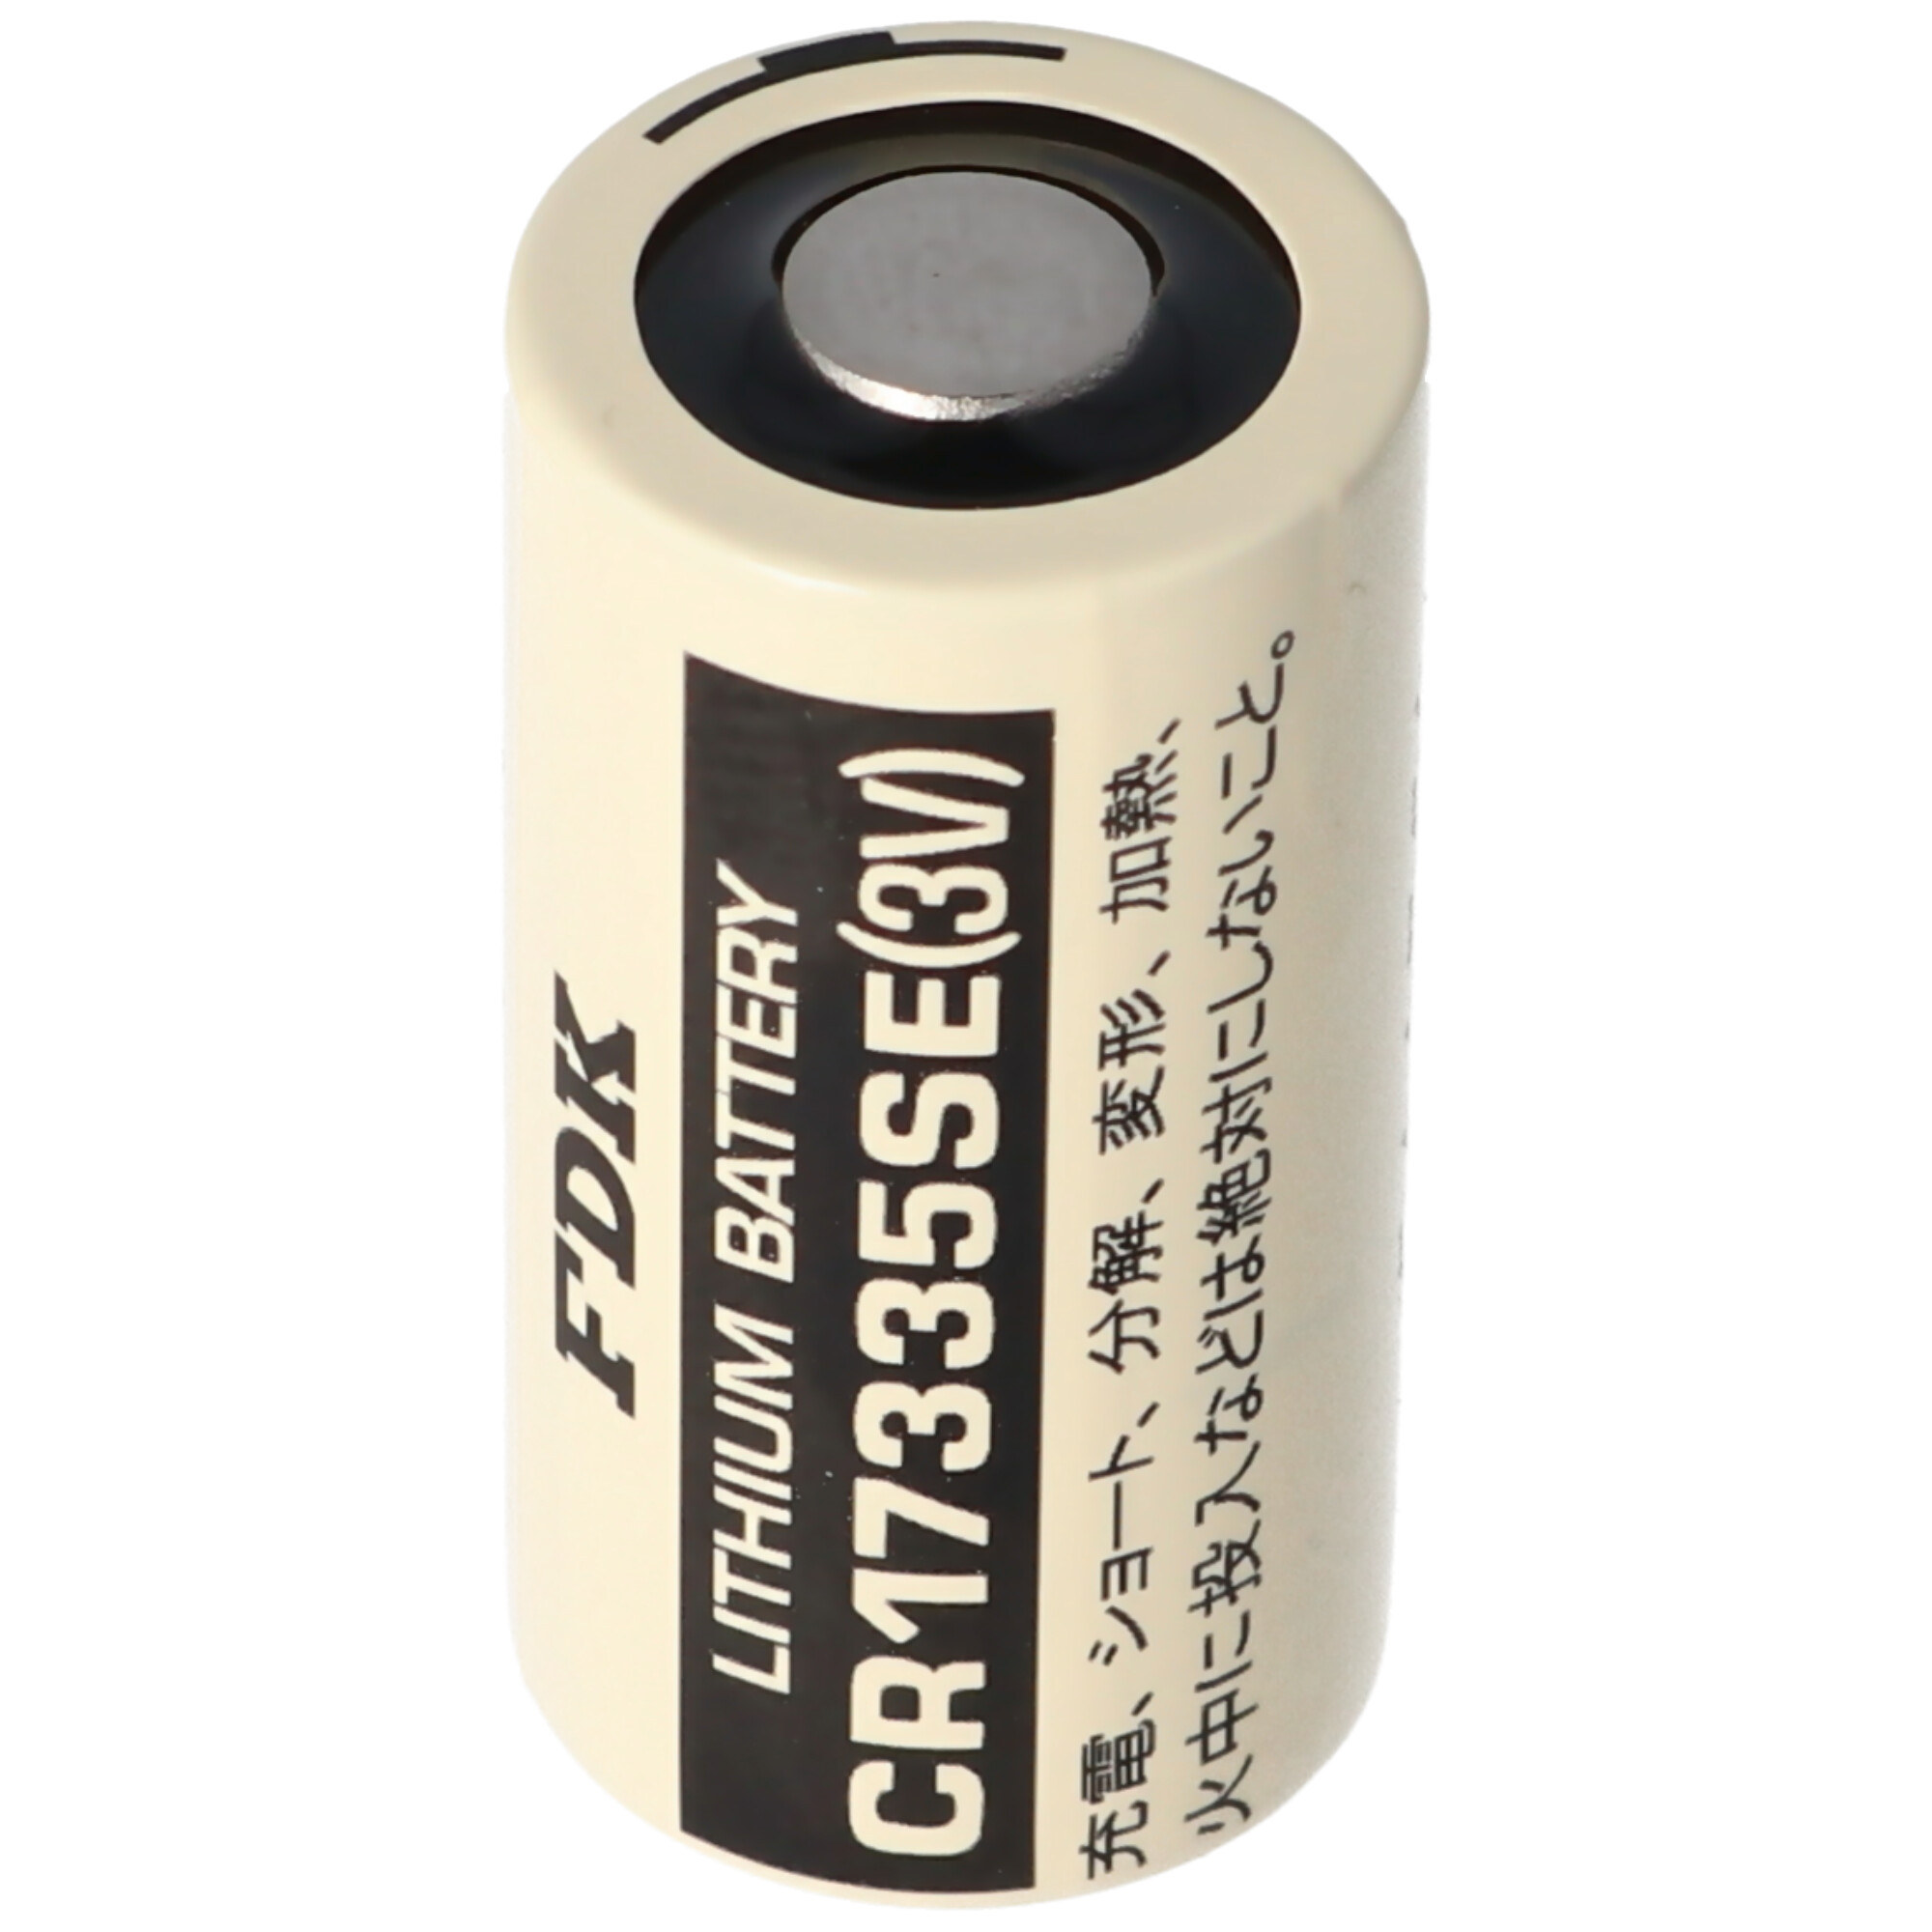 Sanyo Lithium Batterie CR17335 SE Size 2/3A, ohne Lötfahnen CR17335SE